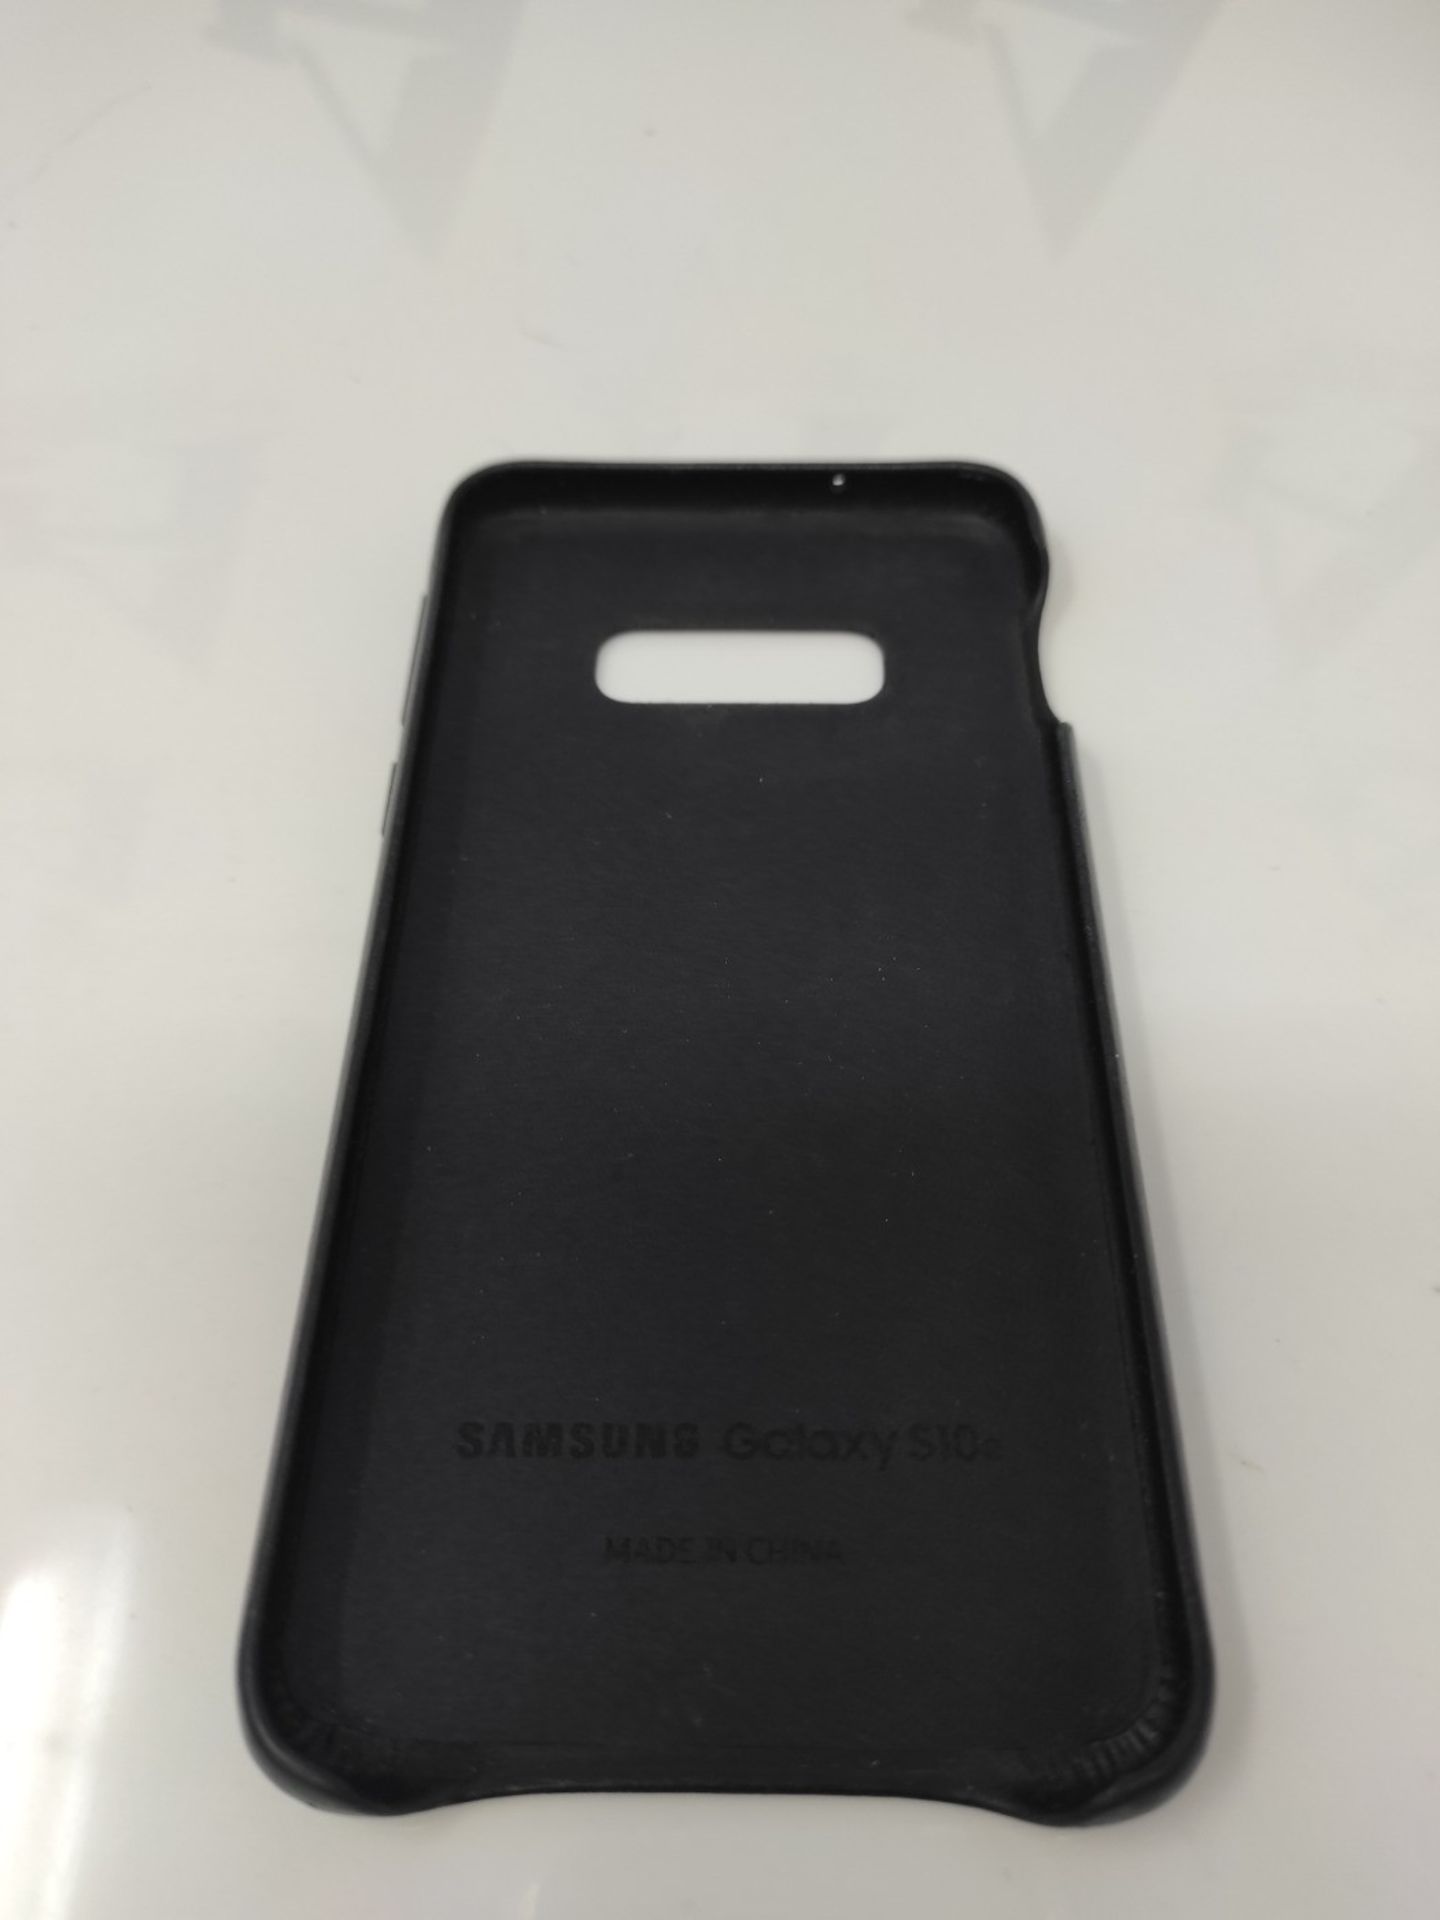 Samsung EF-VG970LBEGWW Leather Cover for S10 E, Black - Image 3 of 3